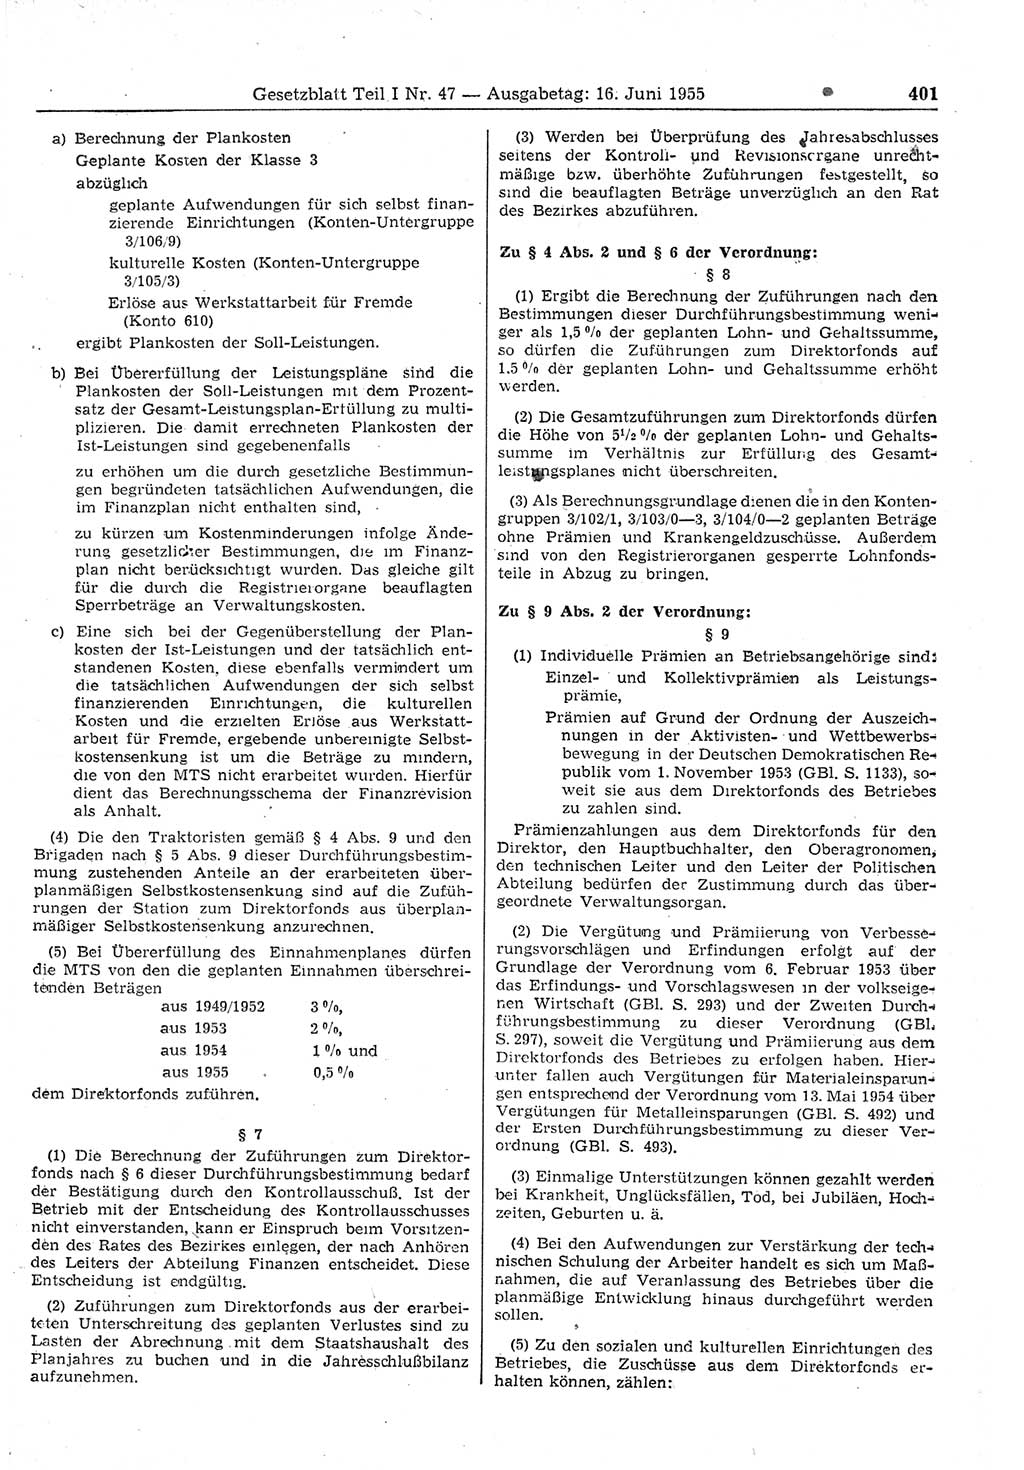 Gesetzblatt (GBl.) der Deutschen Demokratischen Republik (DDR) Teil Ⅰ 1955, Seite 401 (GBl. DDR Ⅰ 1955, S. 401)